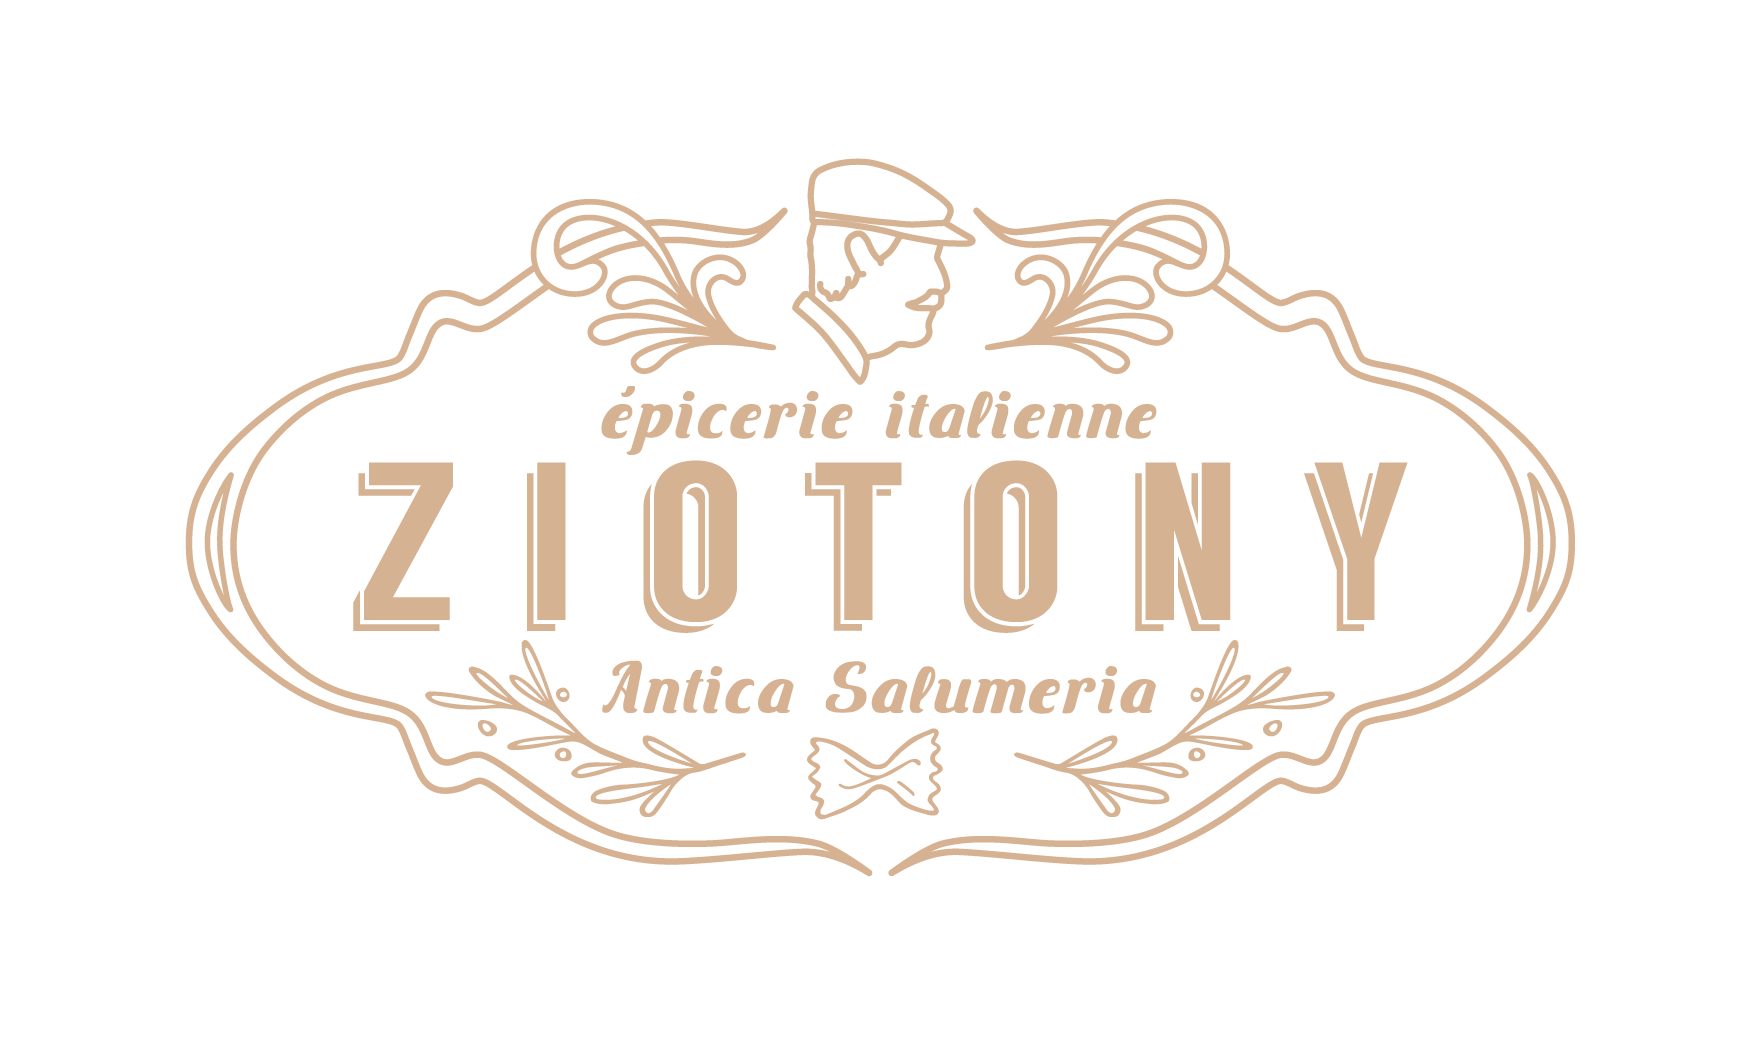 ZIOTONY_AnticaSalumeria